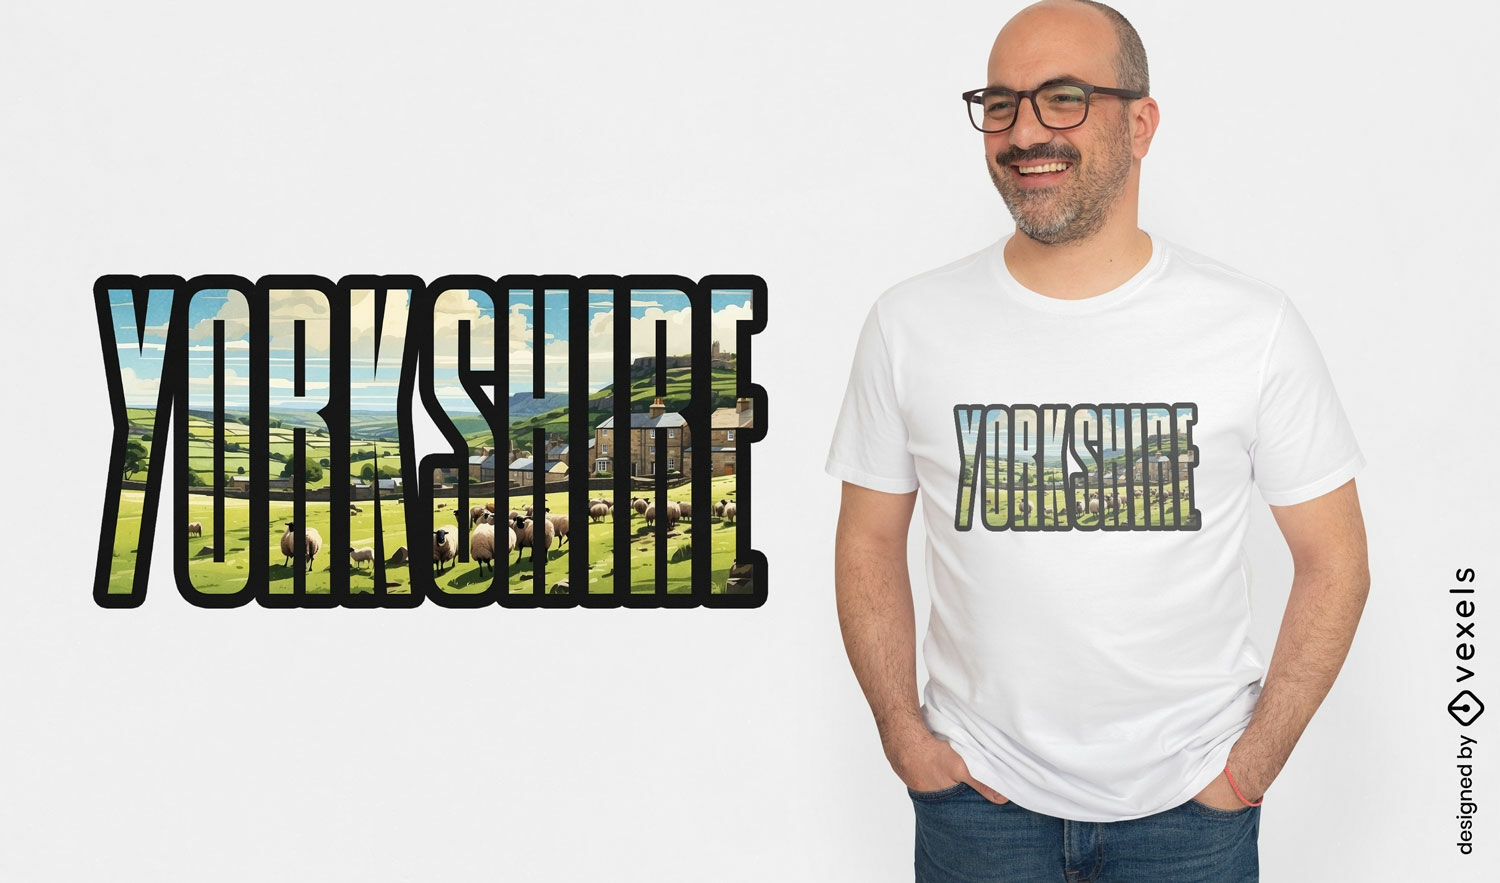 Diseño de camiseta con eslogan de Yorkshire.